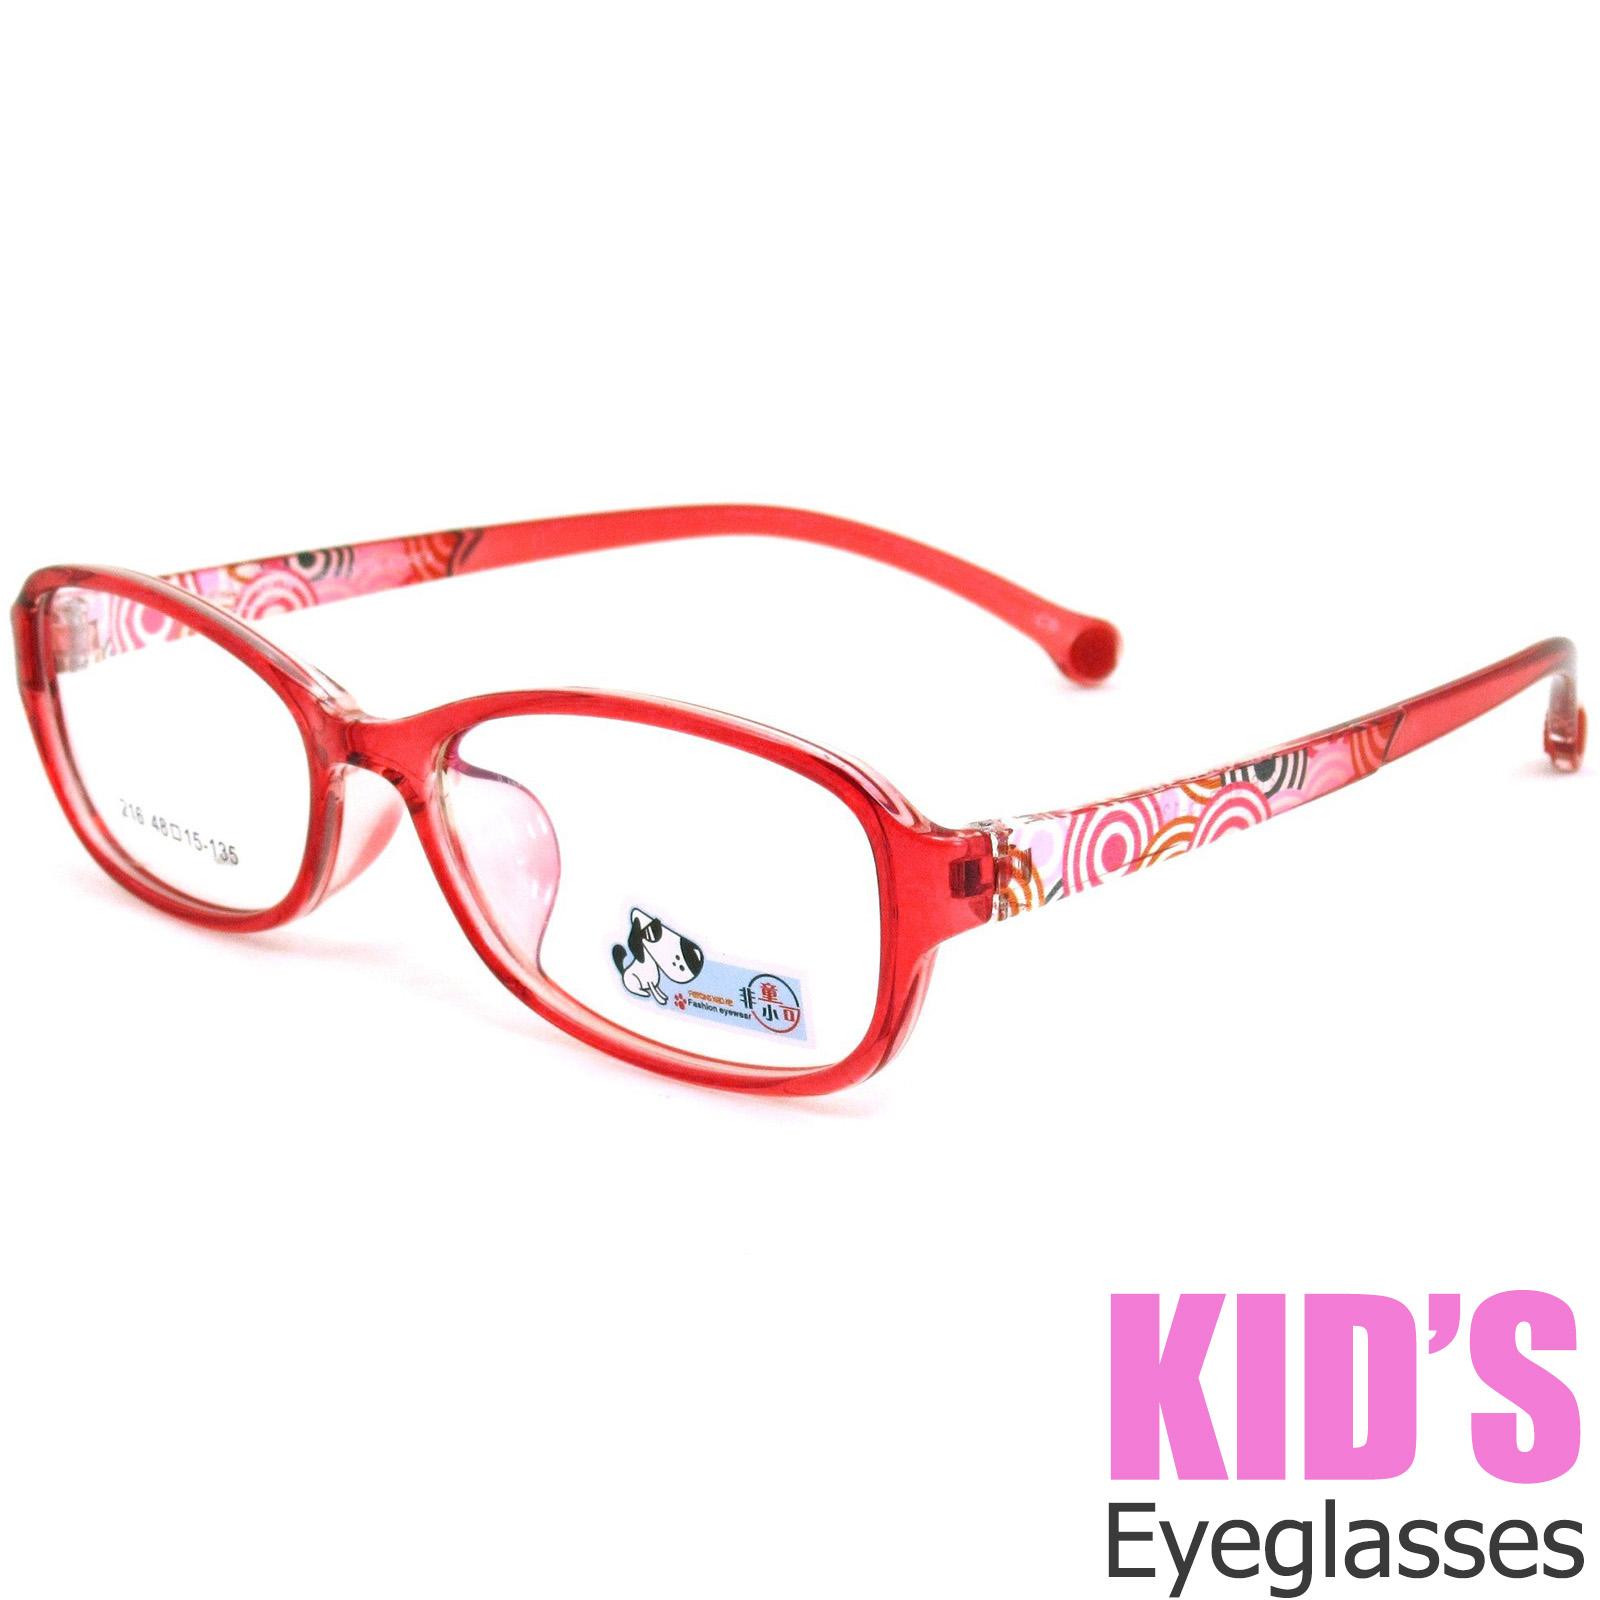 แว่นตาเกาหลีเด็ก Fashion Korea Children แว่นตาเด็ก รุ่น 216 สีแดงกรอบใส กรอบแว่นตาเด็ก Pillow ทรงวงรียาว Eyeglass baby frame ( สำหรับตัดเลนส์ ) วัสดุ PC เบา ขาข้อต่อ Kid leg joints Plastic Grade A material Eyewear Top Glasses